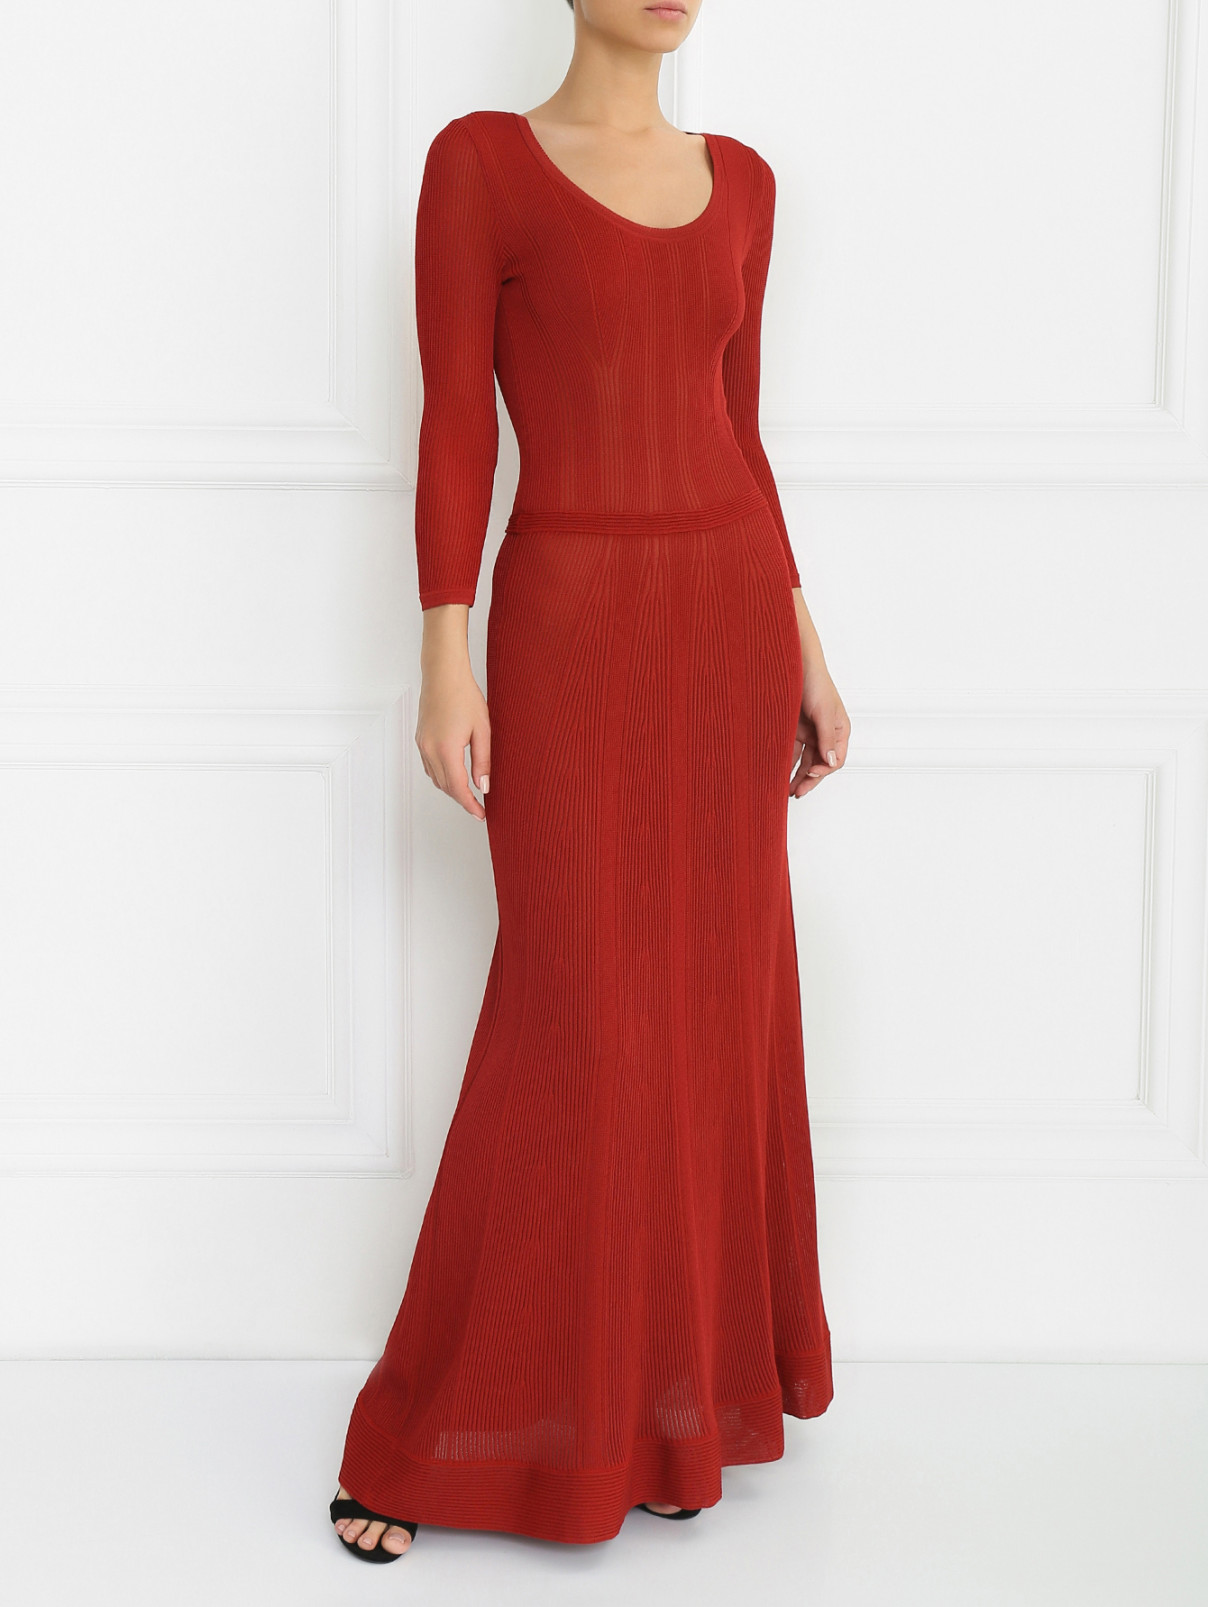 Платье-макси с рукавом 3/4 Alberta Ferretti  –  Модель Общий вид  – Цвет:  Красный